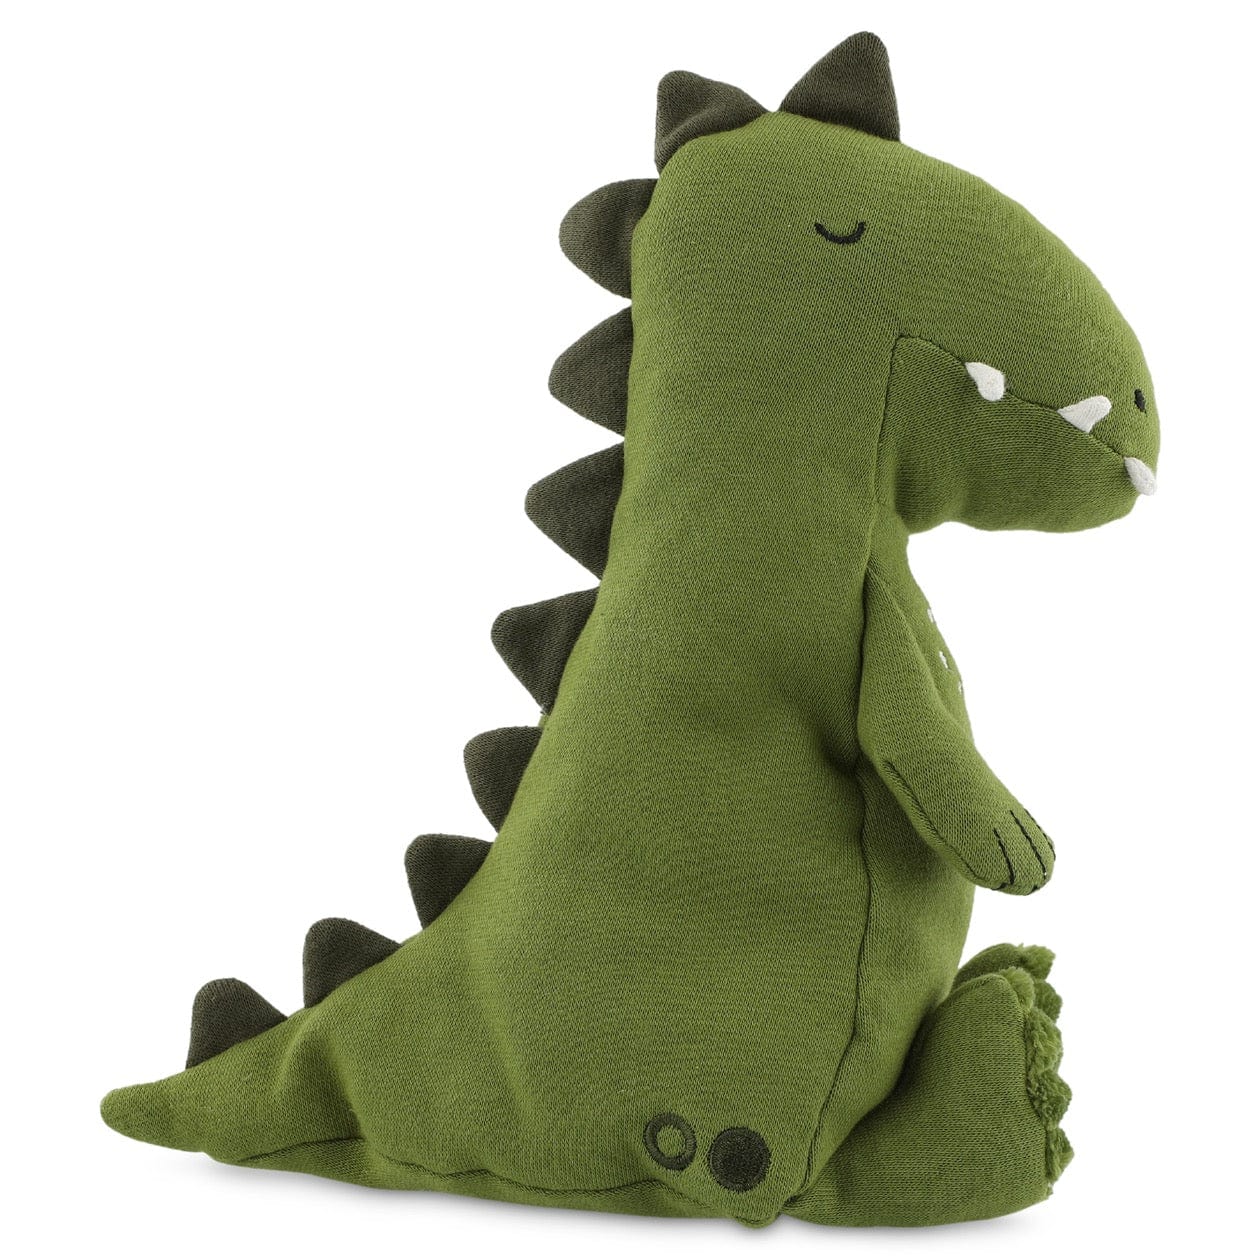 Plush toy large - Mr. Dino